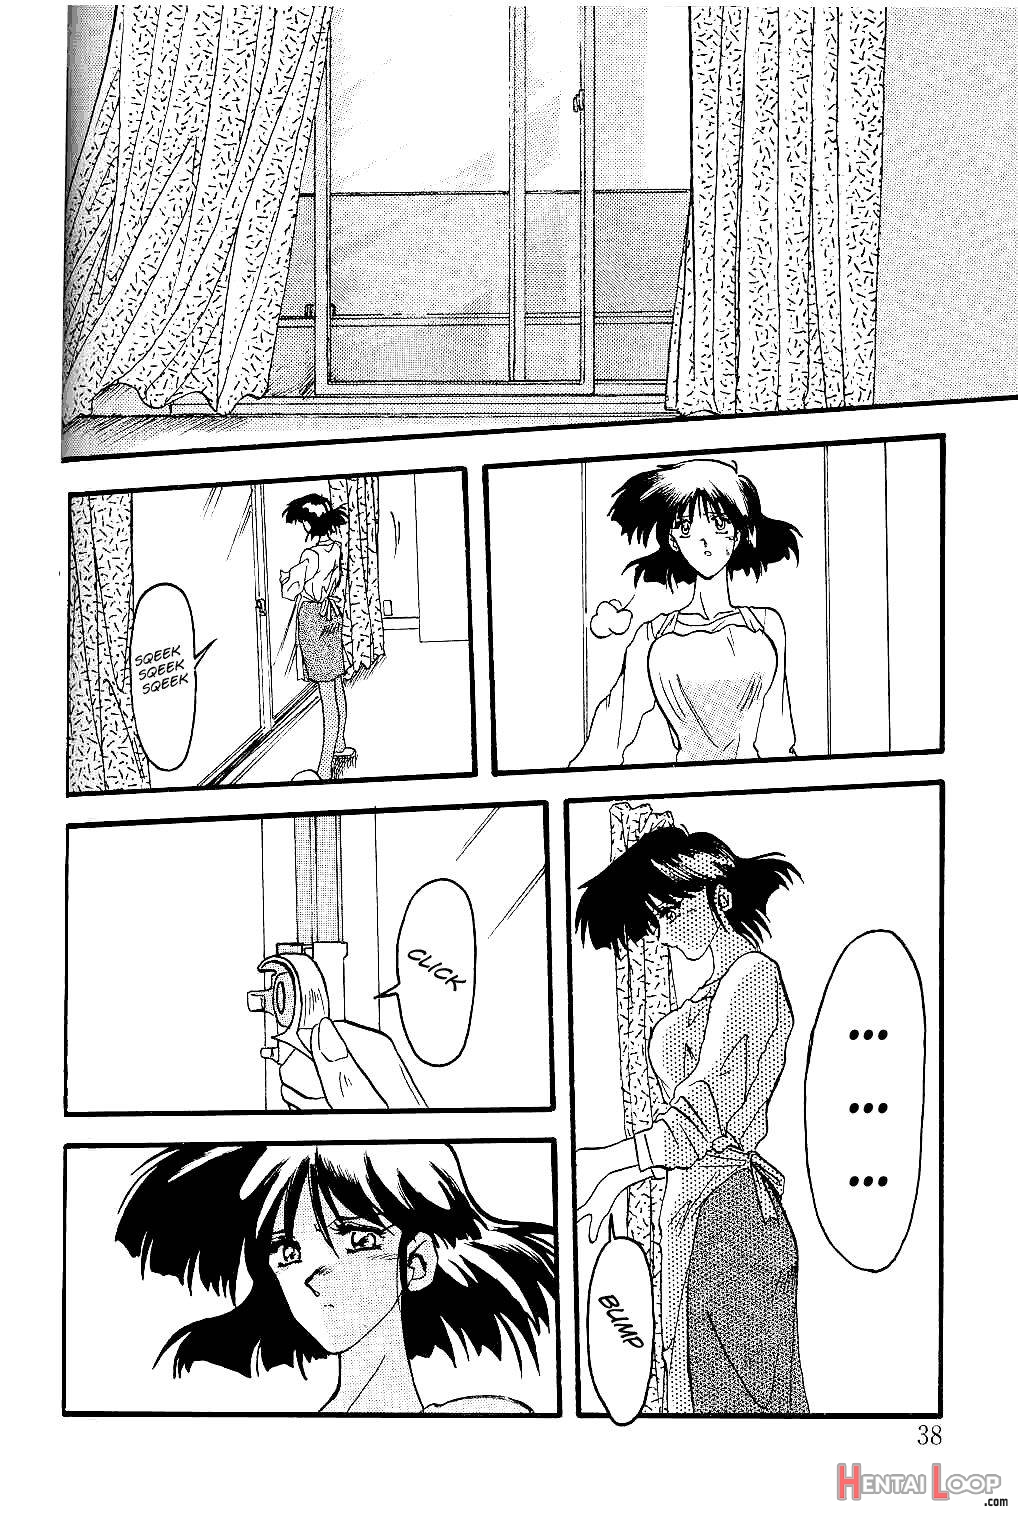 Hiiro no Koku page 37